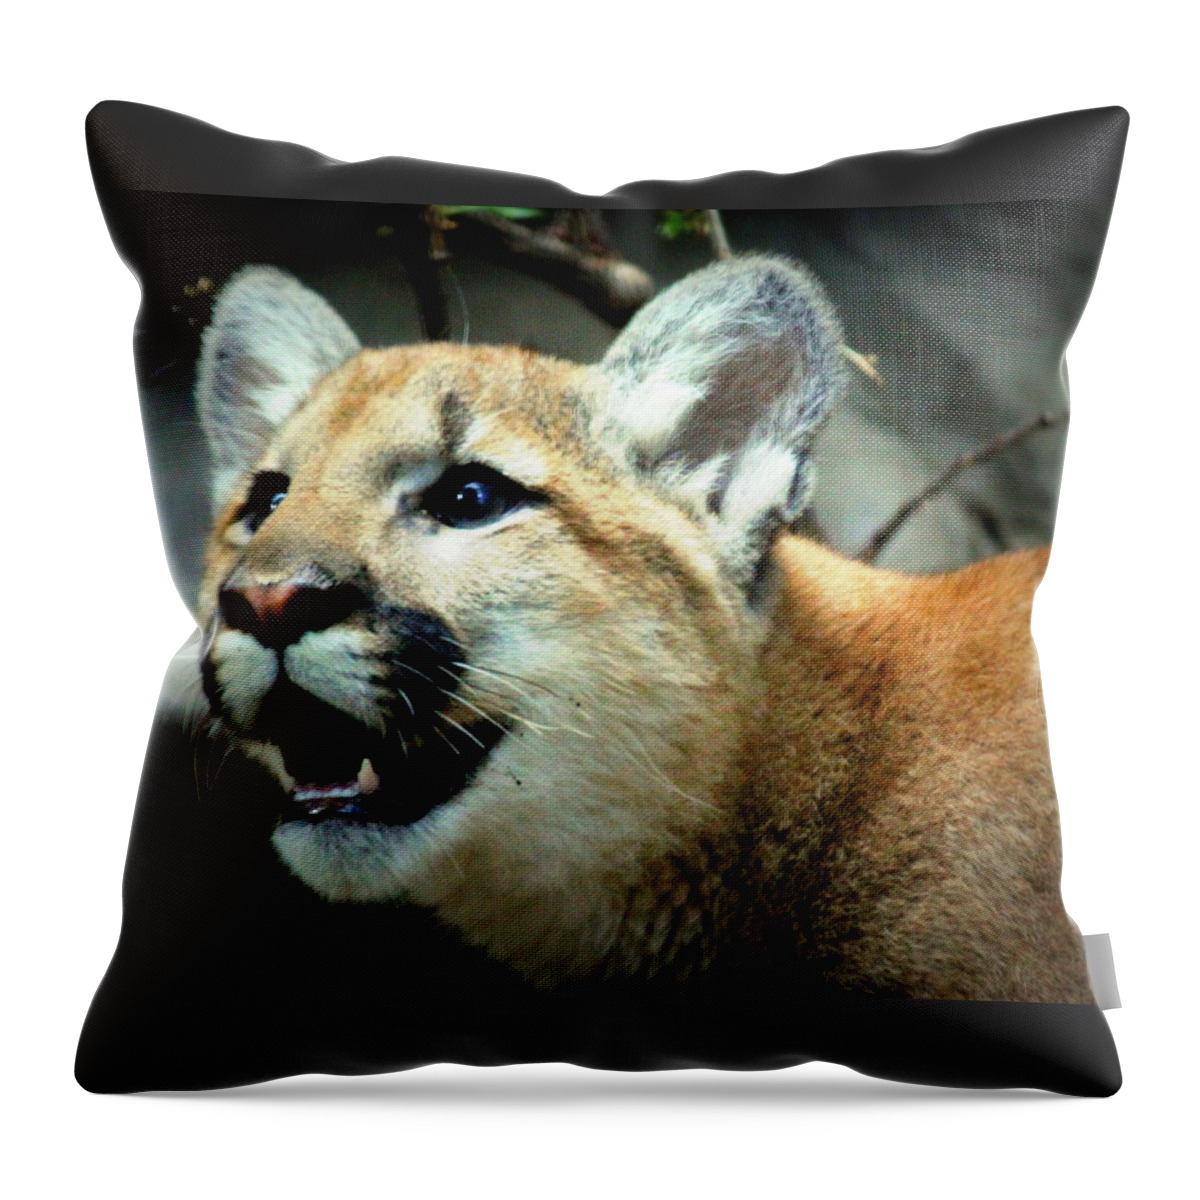 Puma Throw Pillow featuring the photograph Puma Cub by John Olson